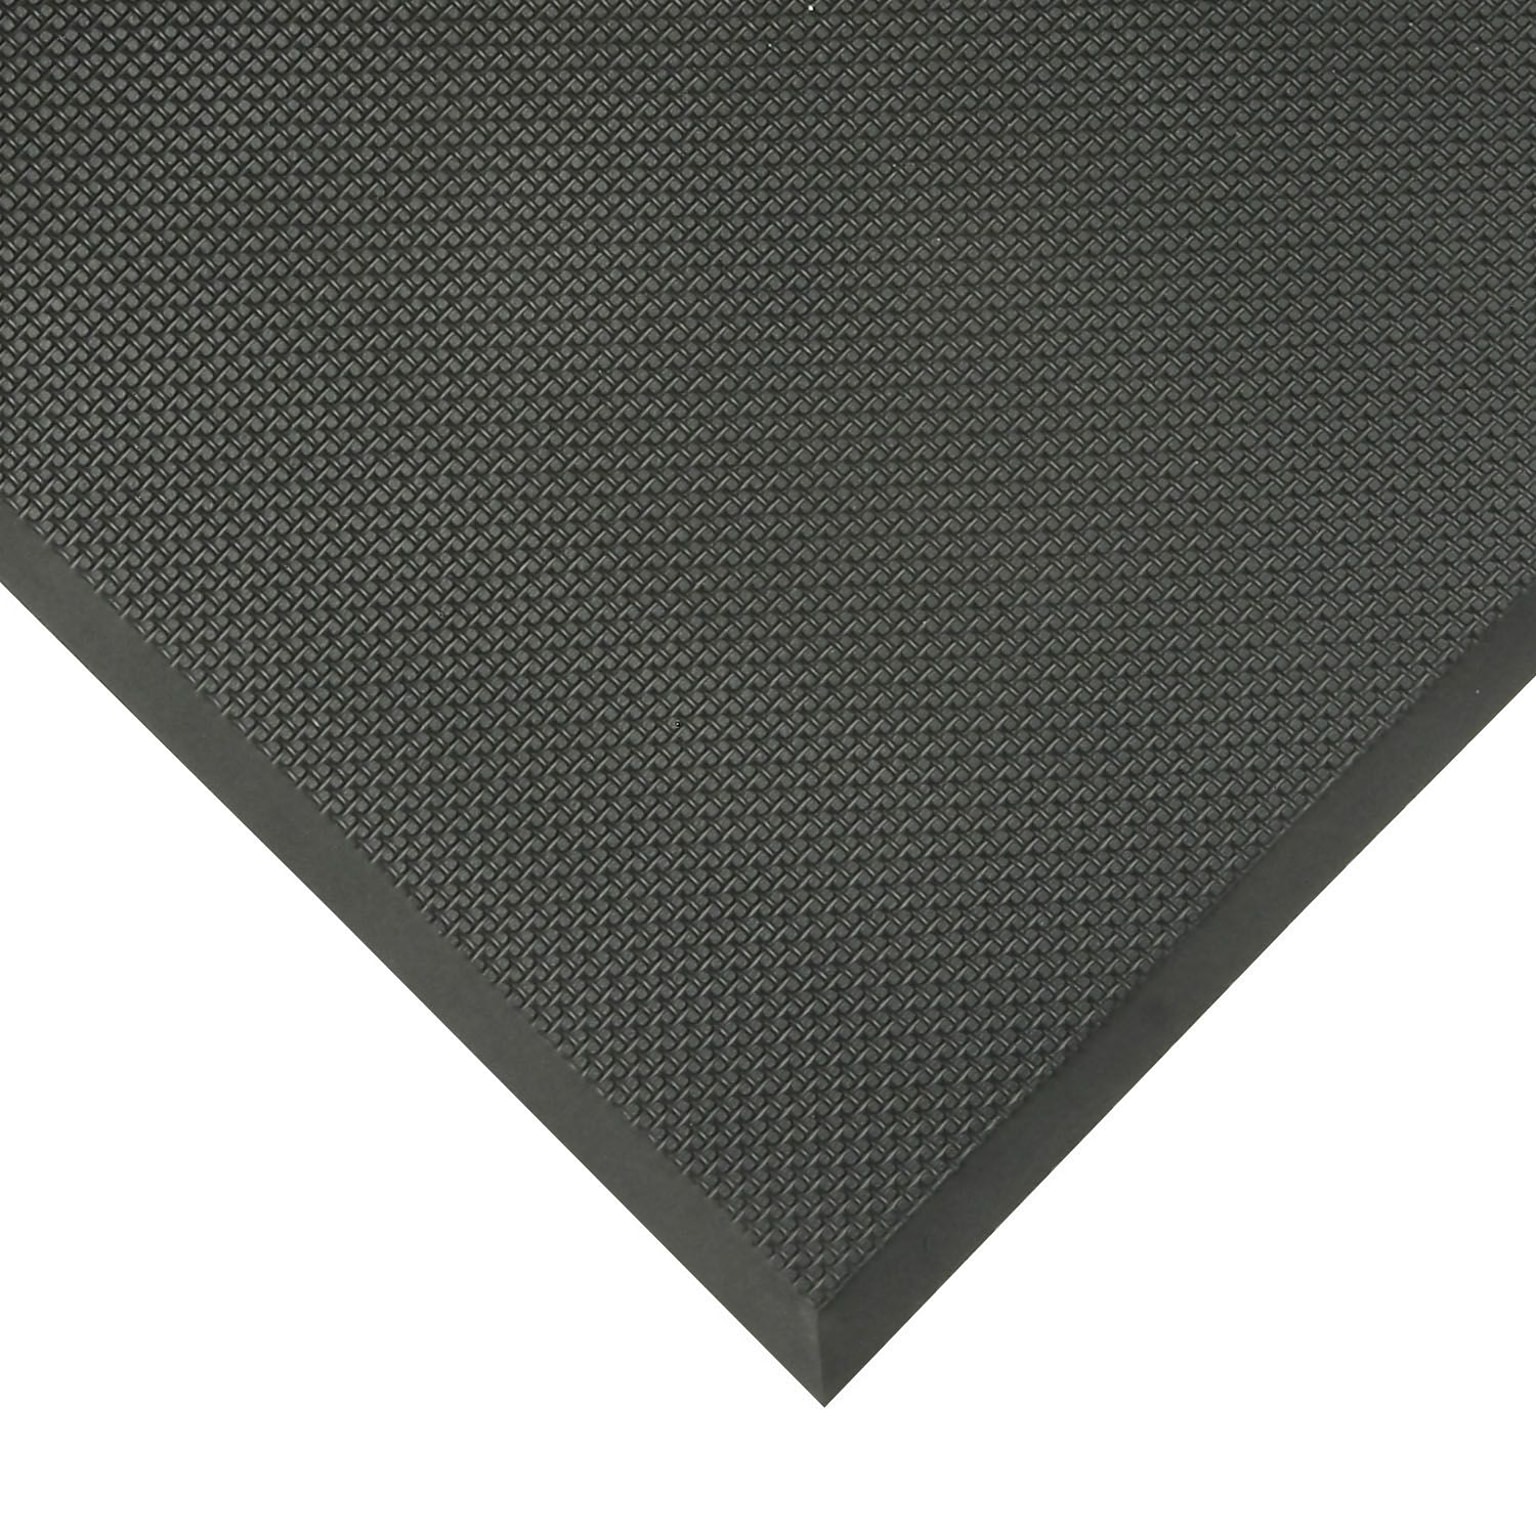 Apex Superfoam PVC Nitrile Foam Anti-Fatigue Mat, 60 x 36, Black